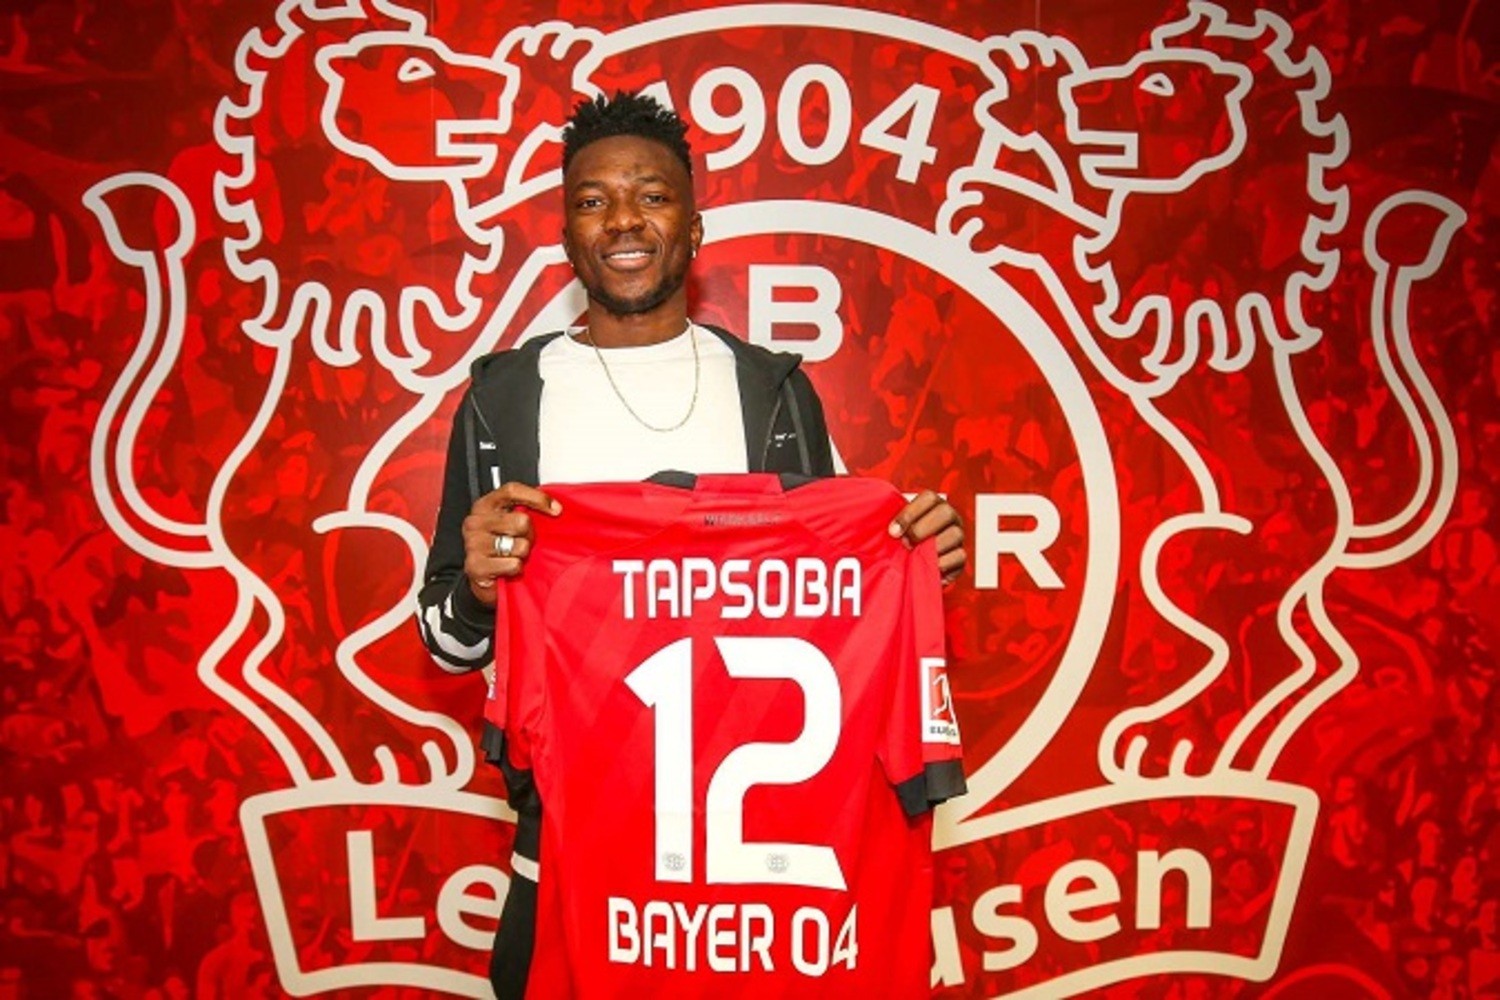 OFICJALNIE: Edmond Tapsoba w Bayerze Leverkusen. Transferowy rekord Burkina Faso!